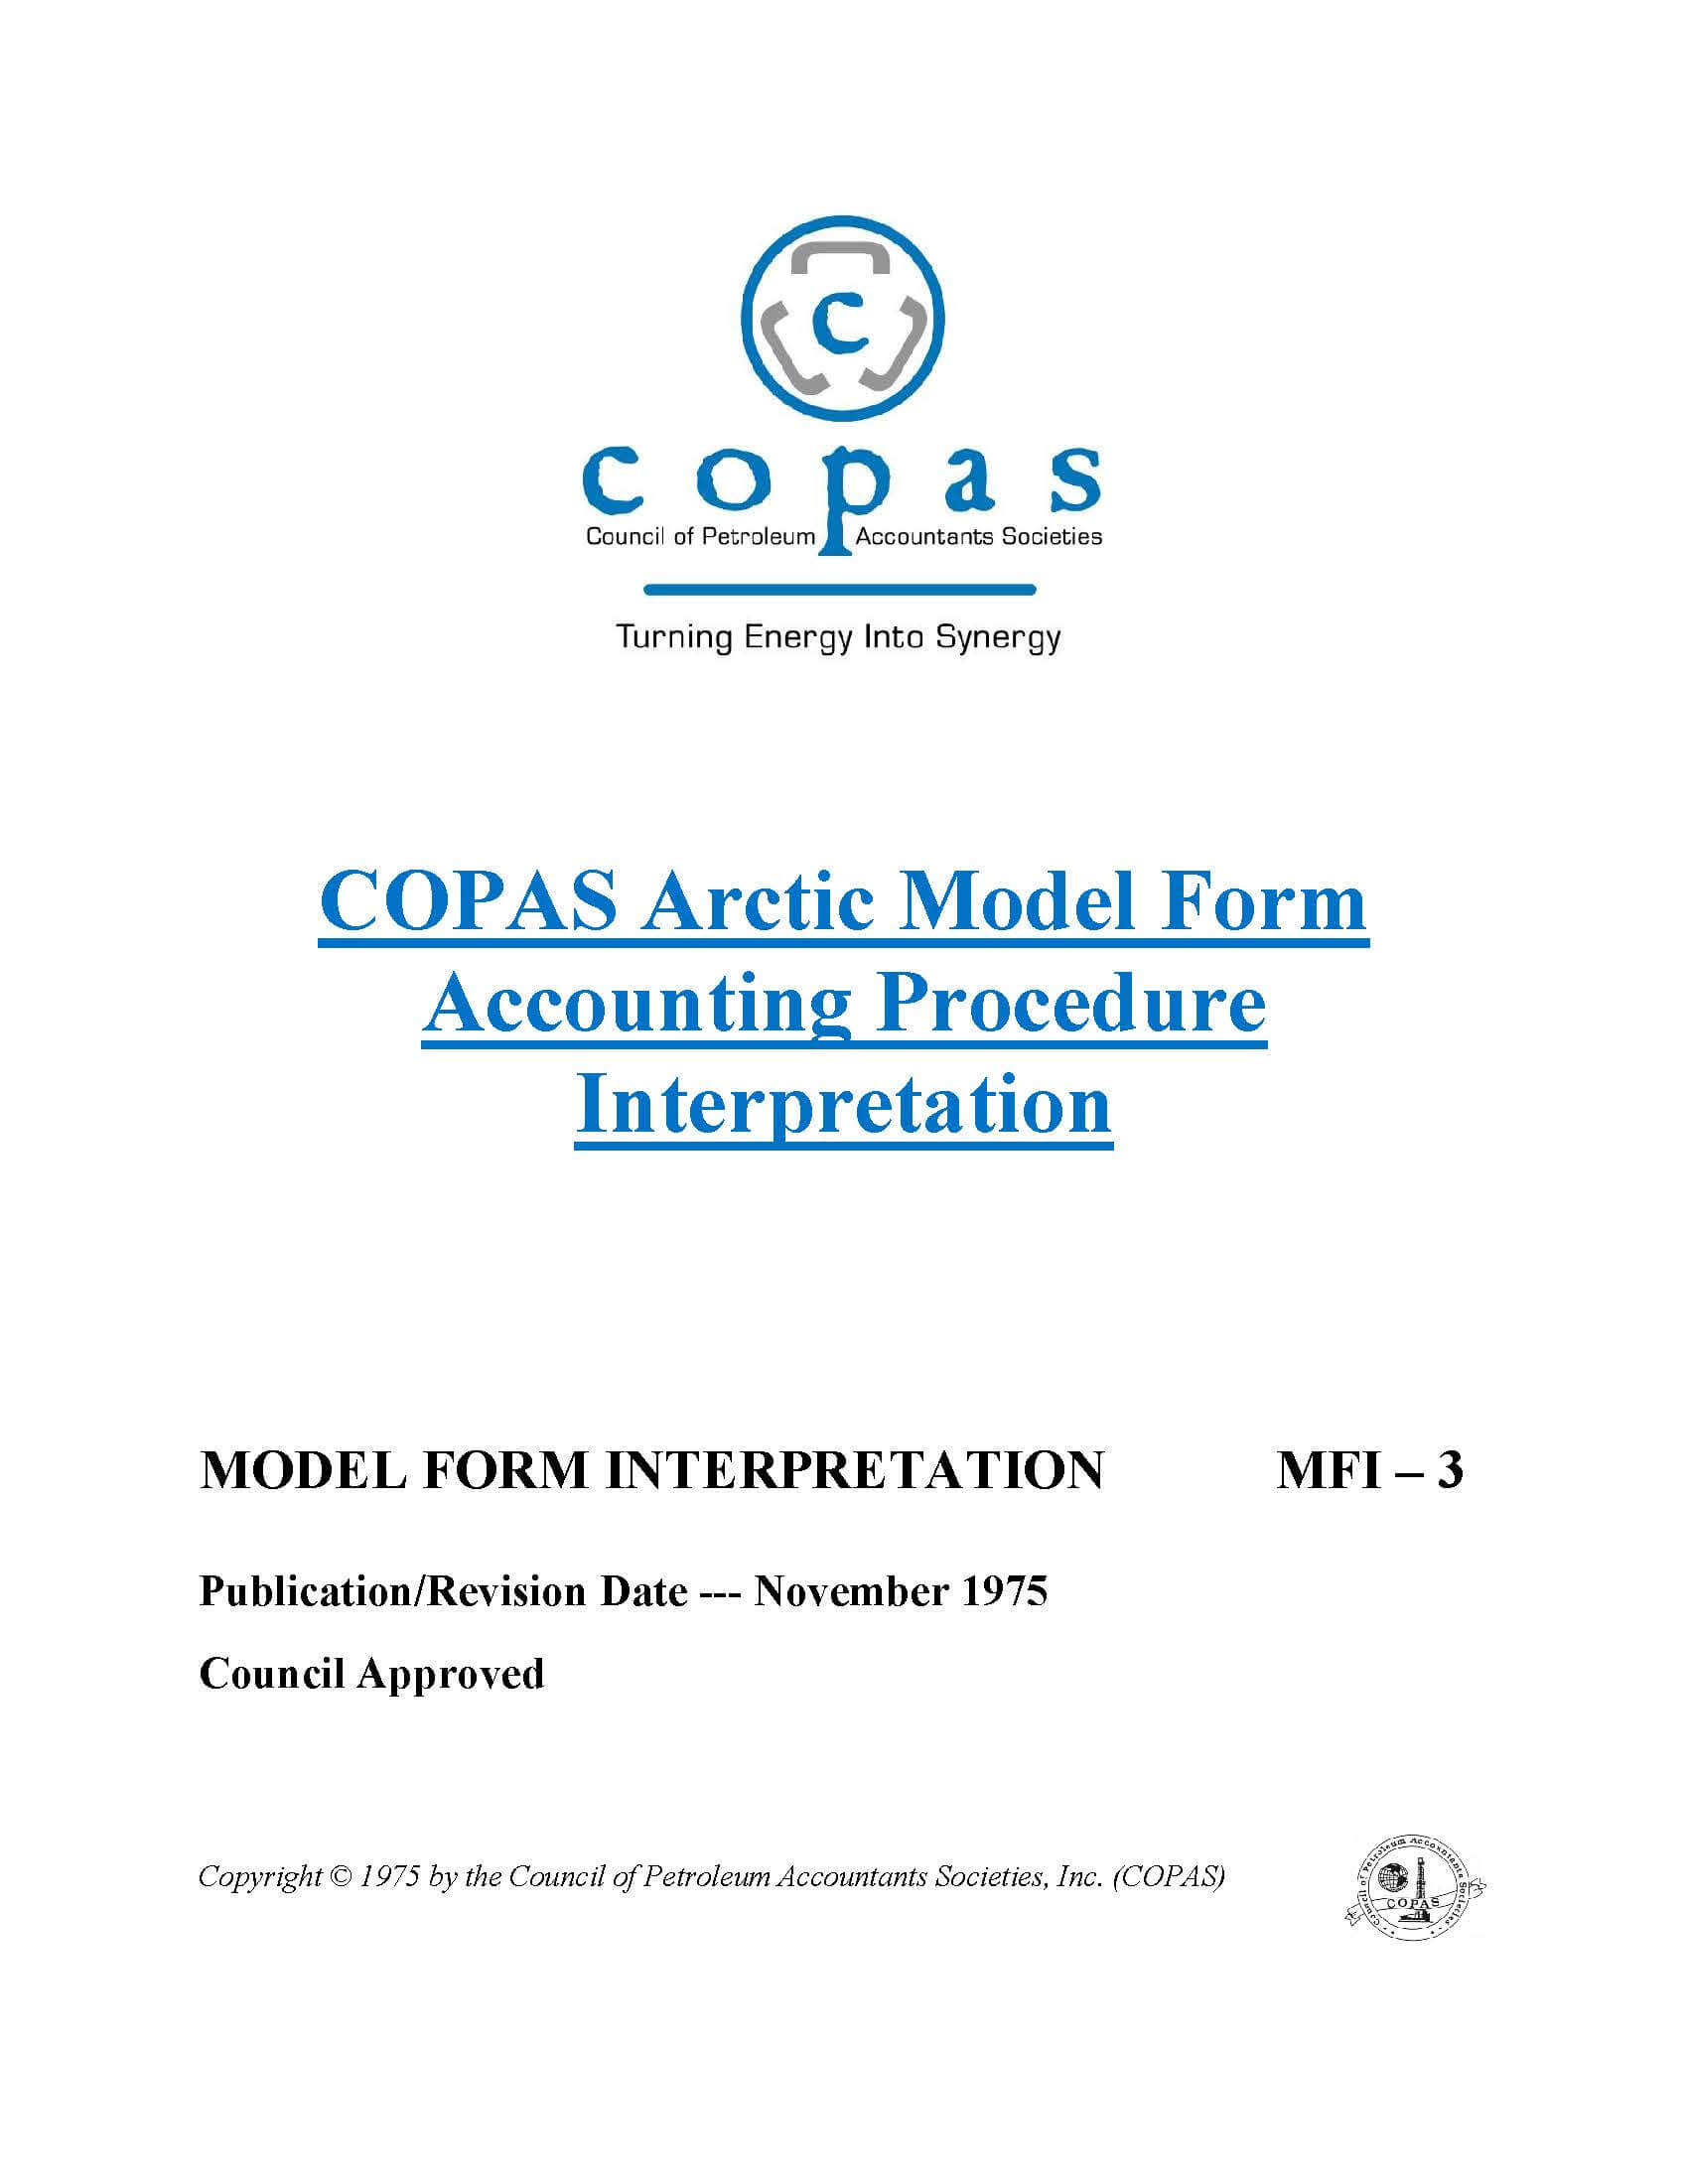 MFI-3 Arctic Model Form Accounting Procedure Interpretation